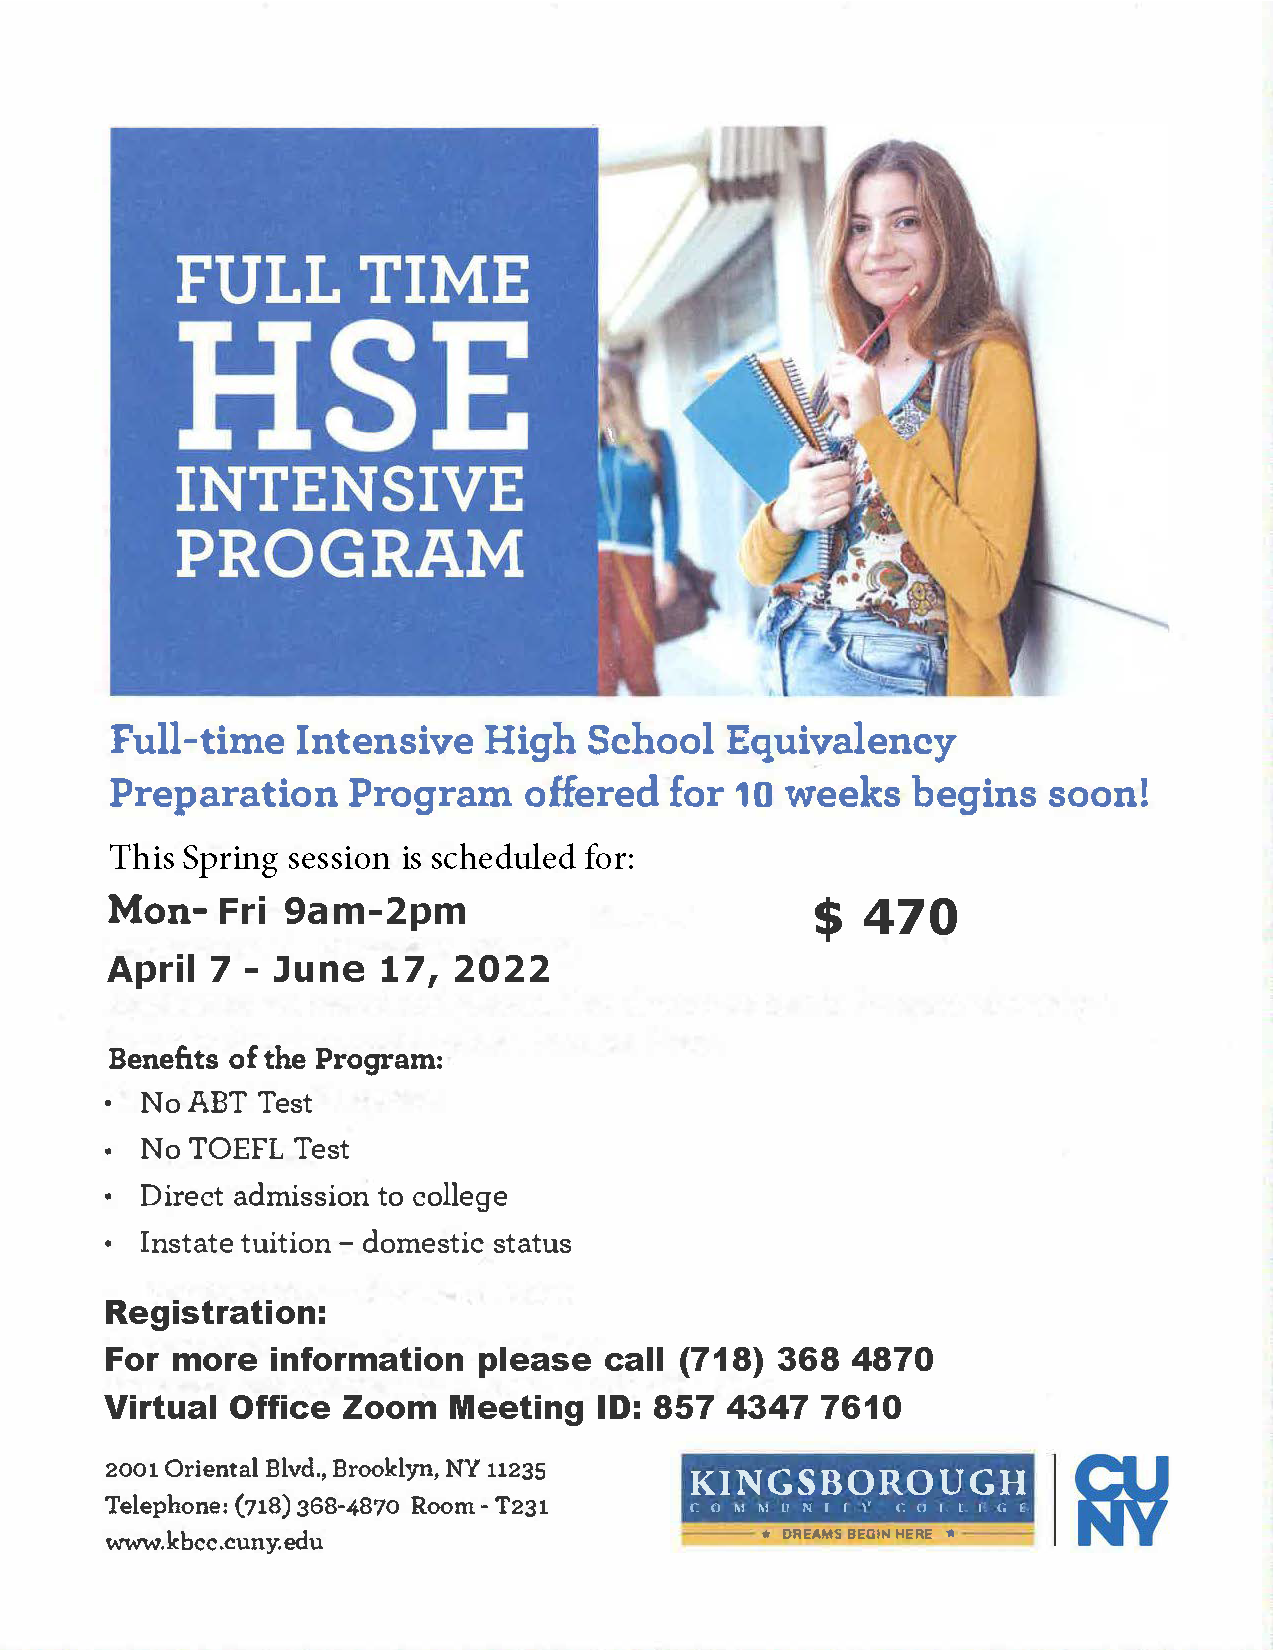 Full Time HSE Intensive Program